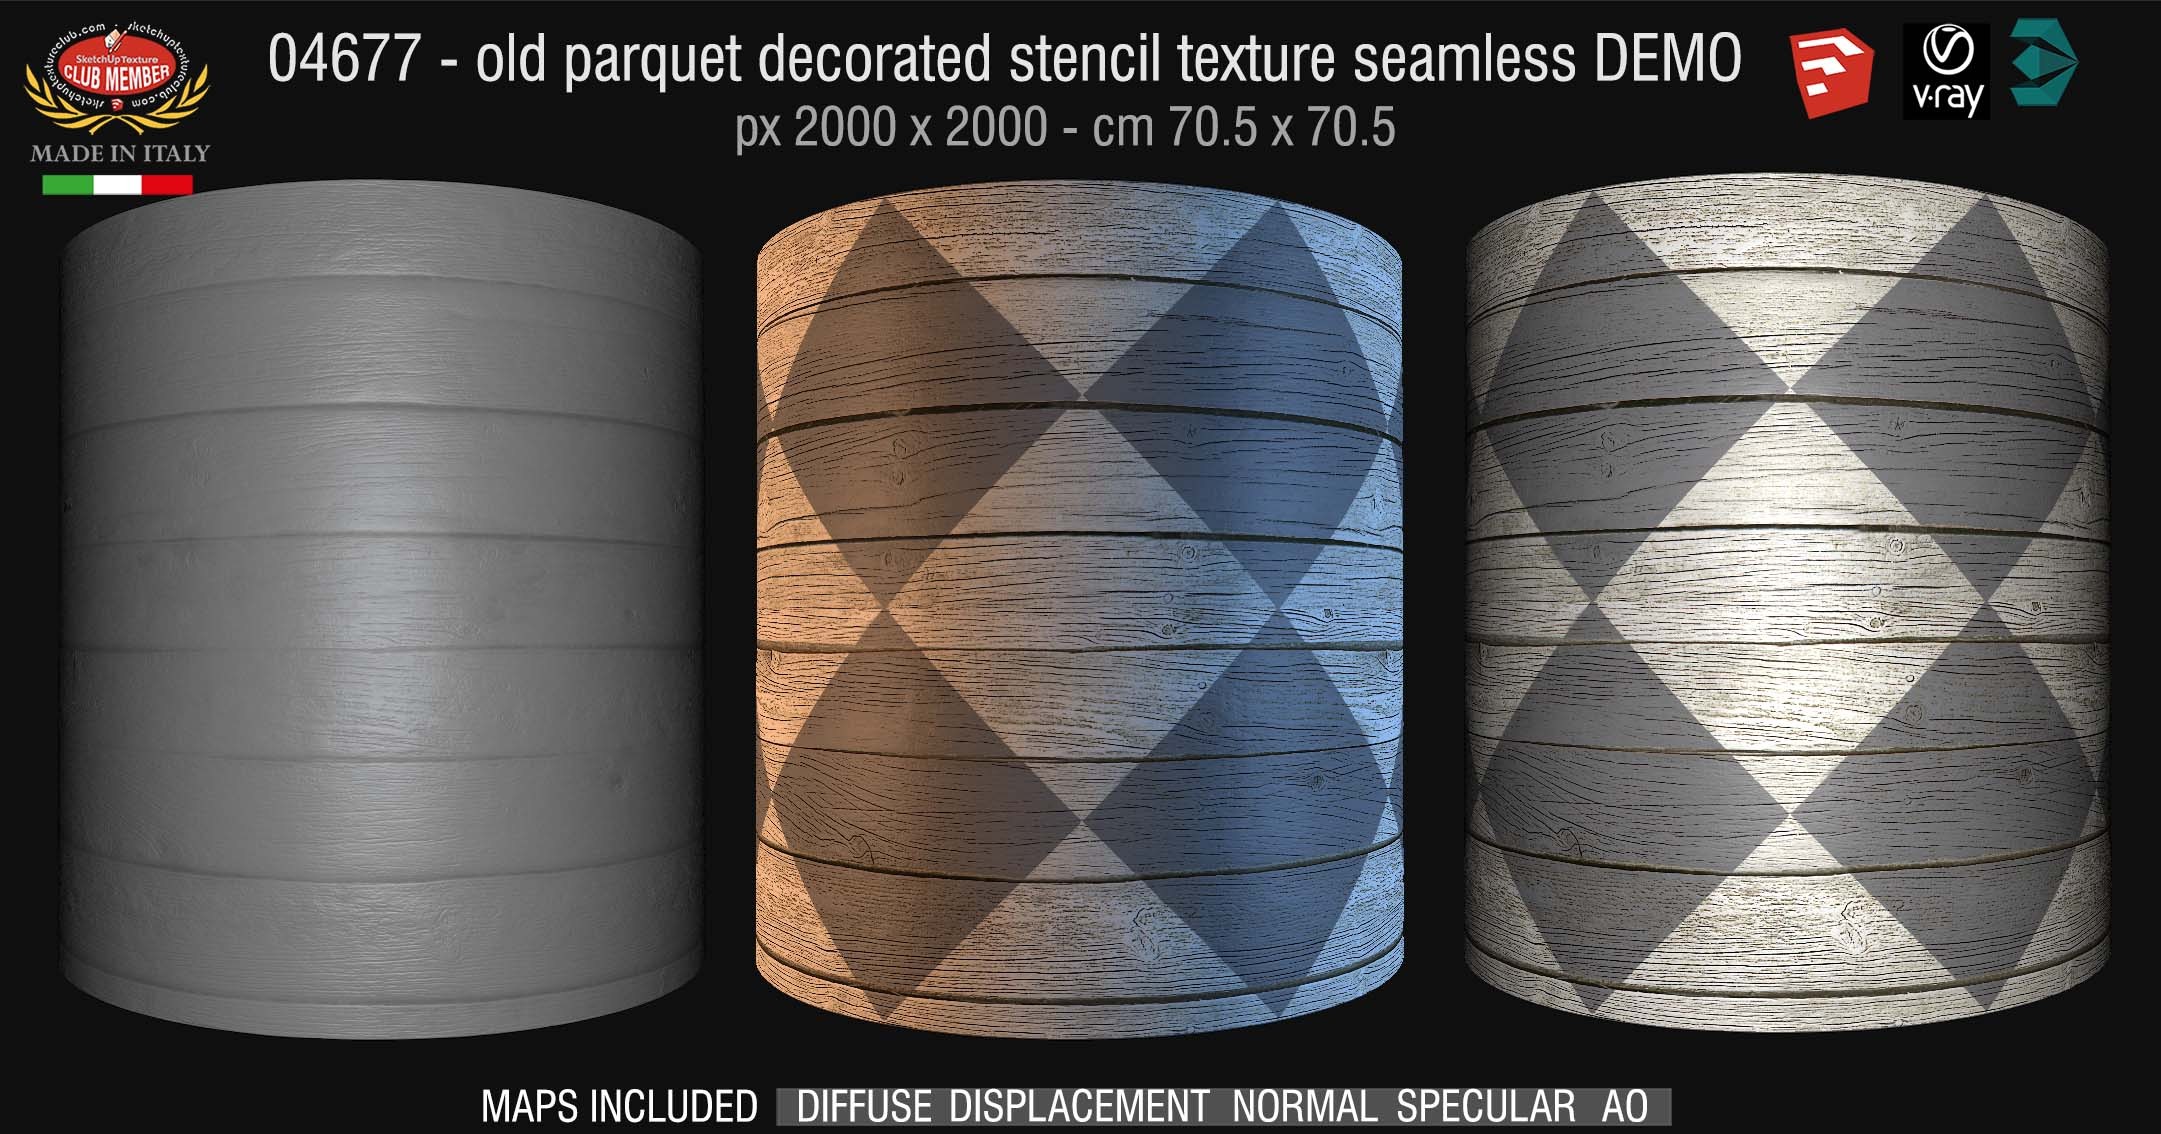 04677 HR Parquet decorated stencil texture seamless + maps DEMO